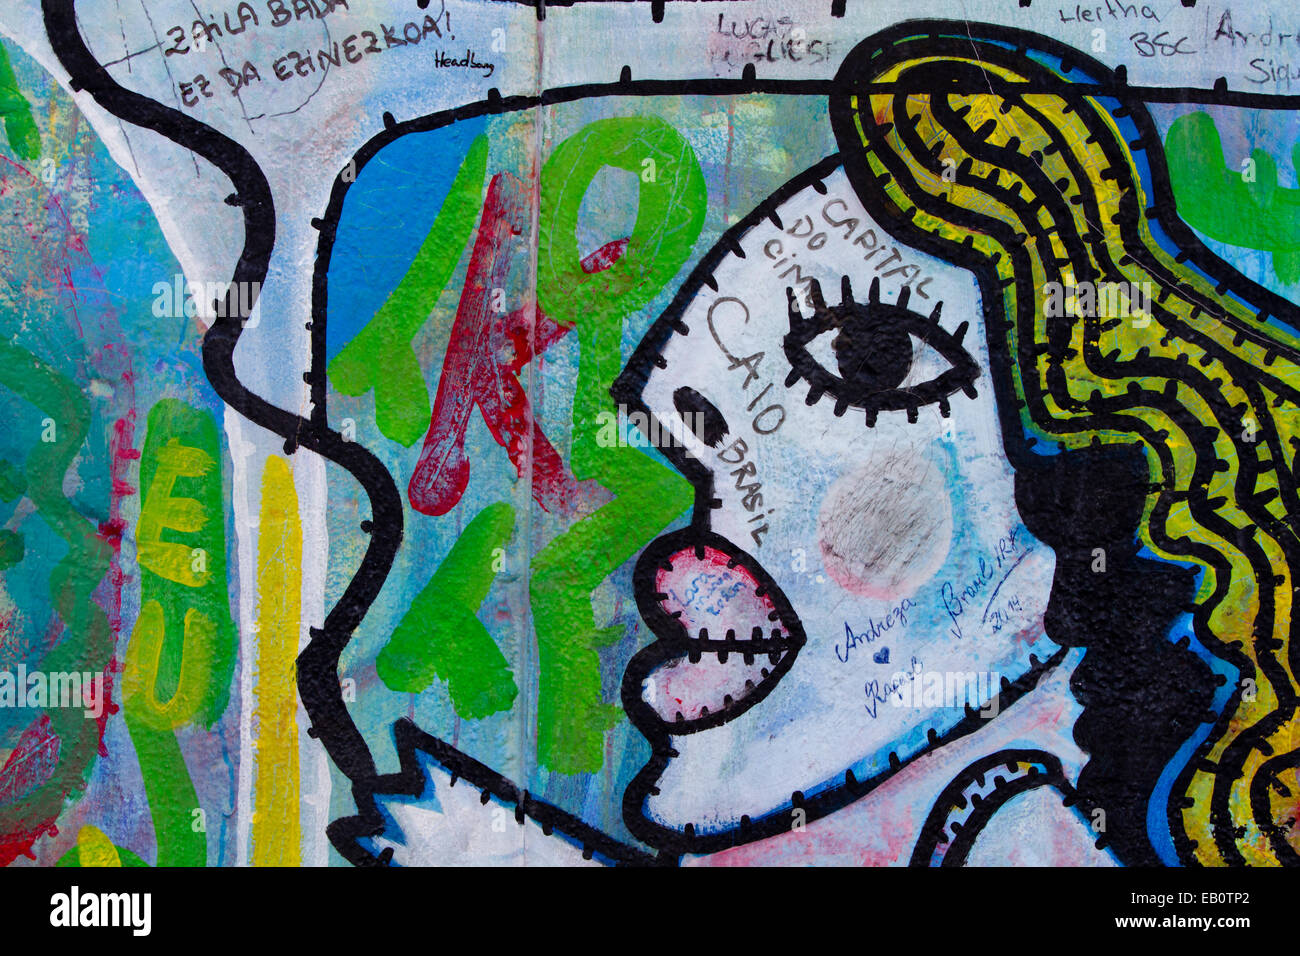 Berlin Wall Cartoon girl faces Graffiti street art Stock Photo